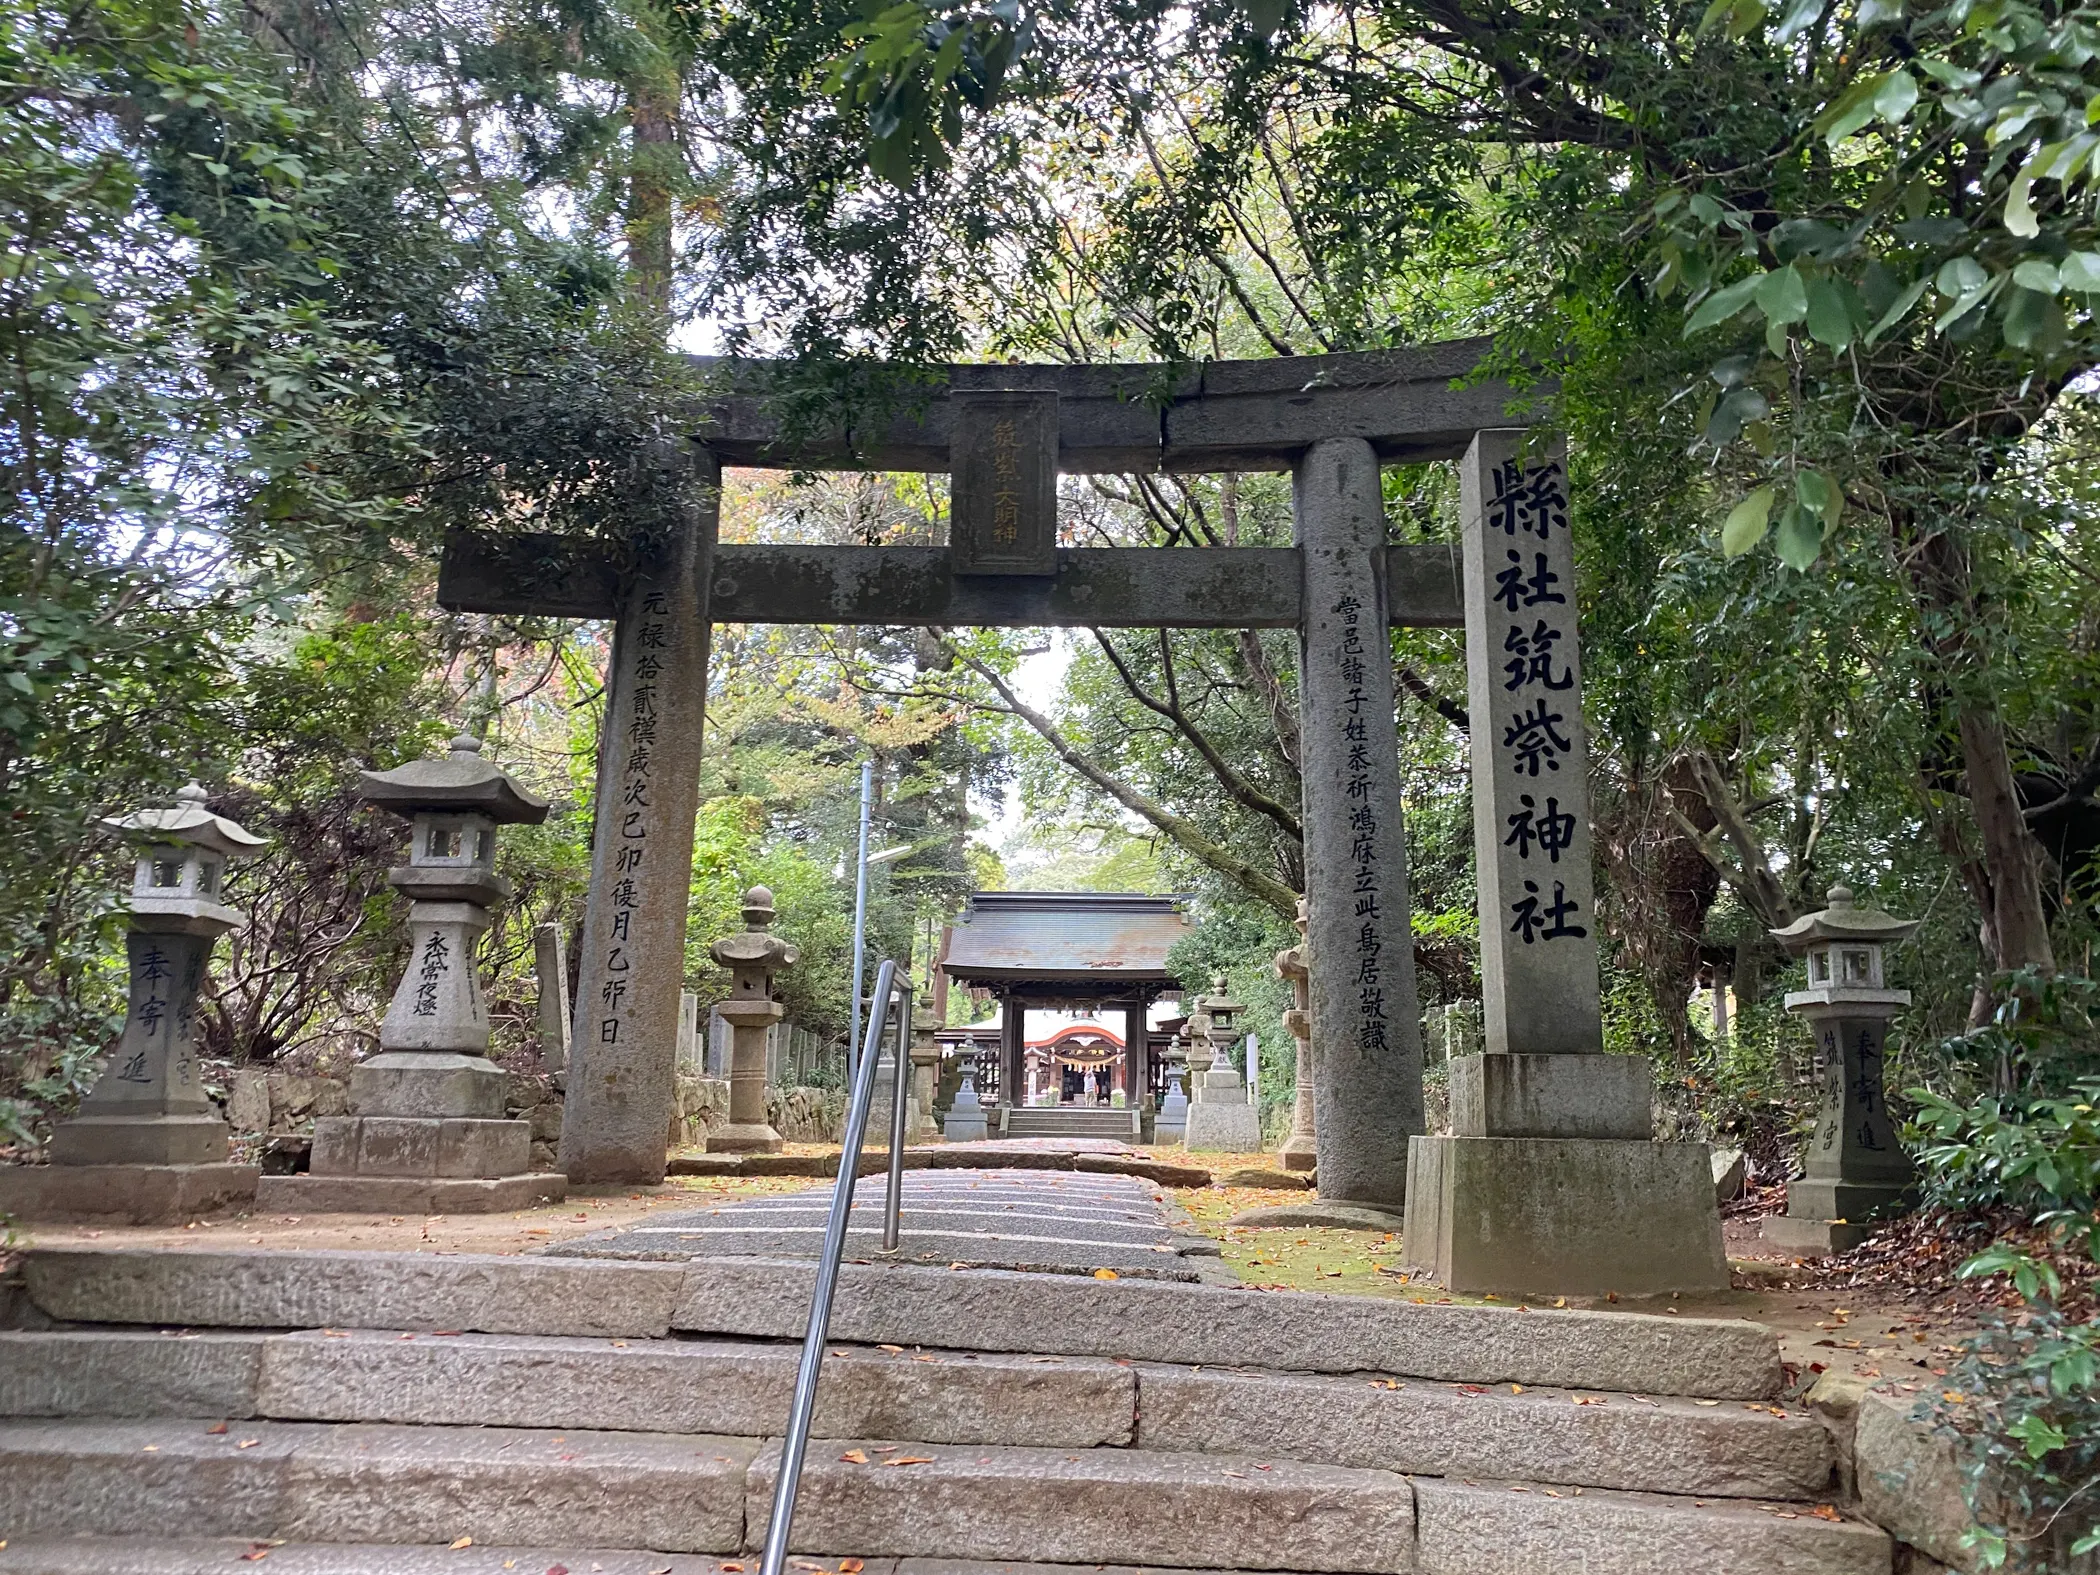 「筑紫神社」本殿へと続く道4